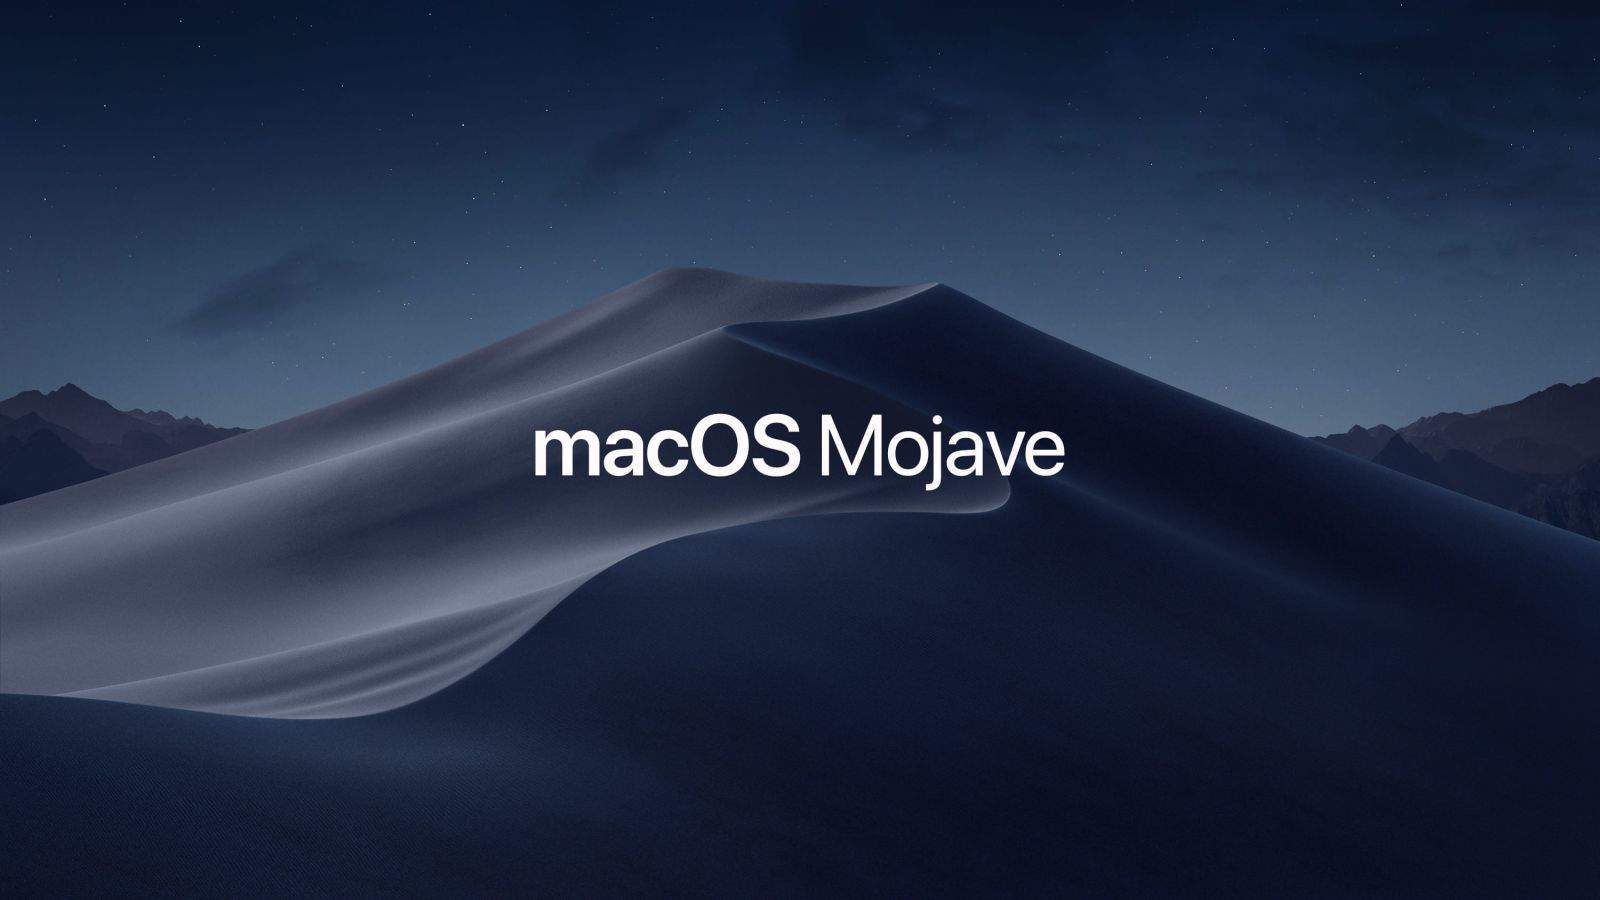 Hướng dẫn fix lỗi không nhận Bluetooth trên macOS 10.14 Mojave